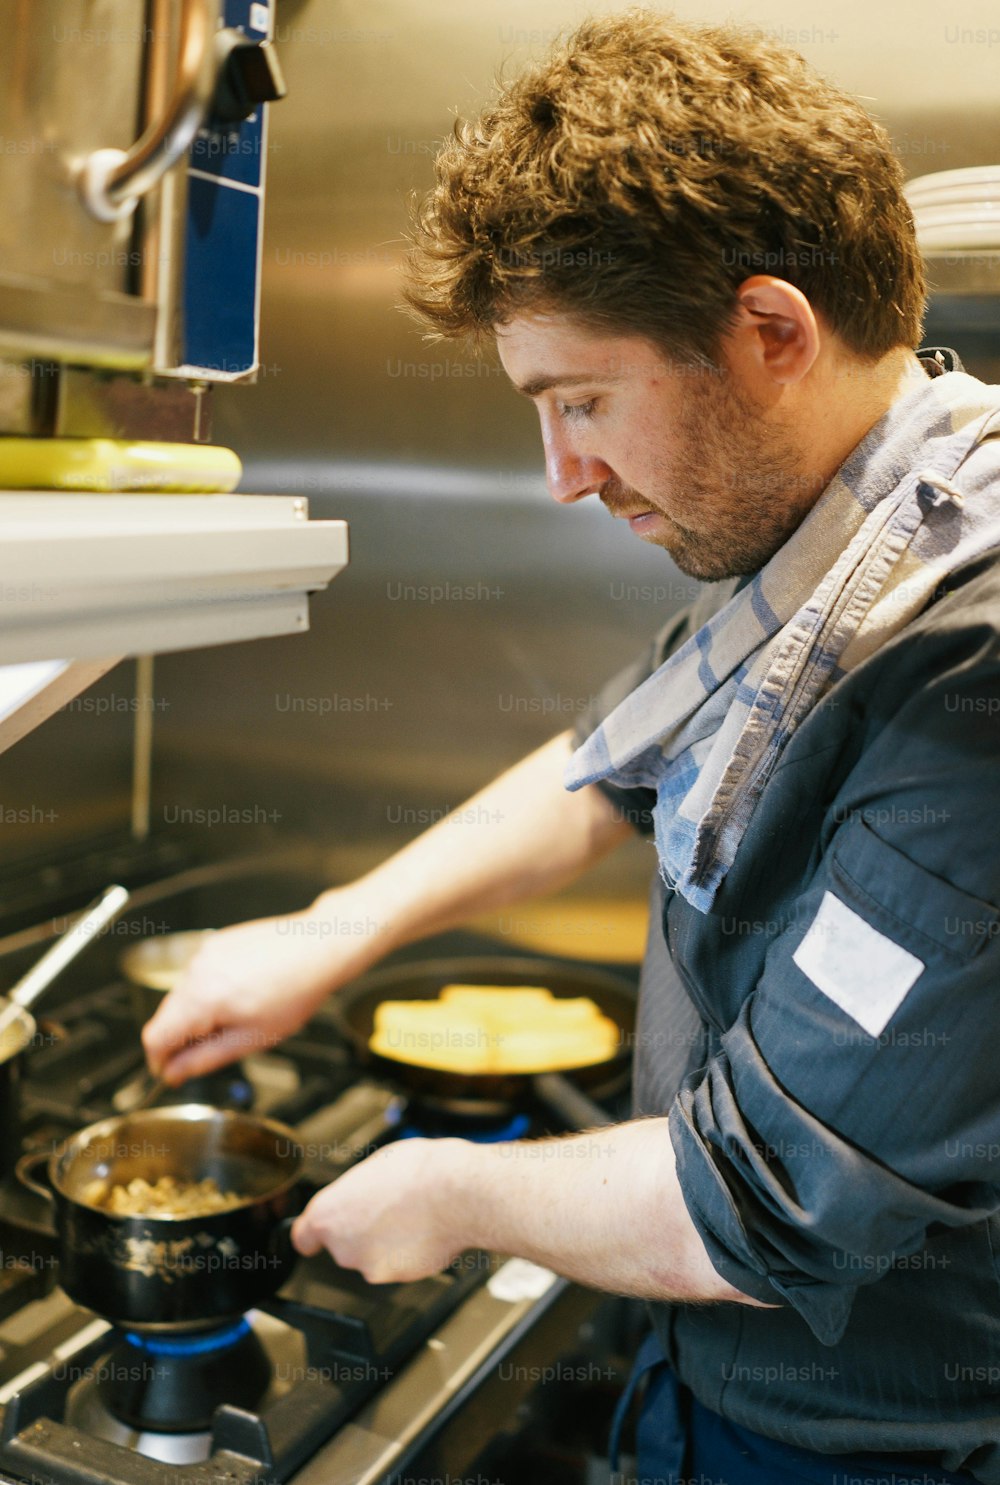 Un uomo che cucina il cibo su una stufa in una cucina